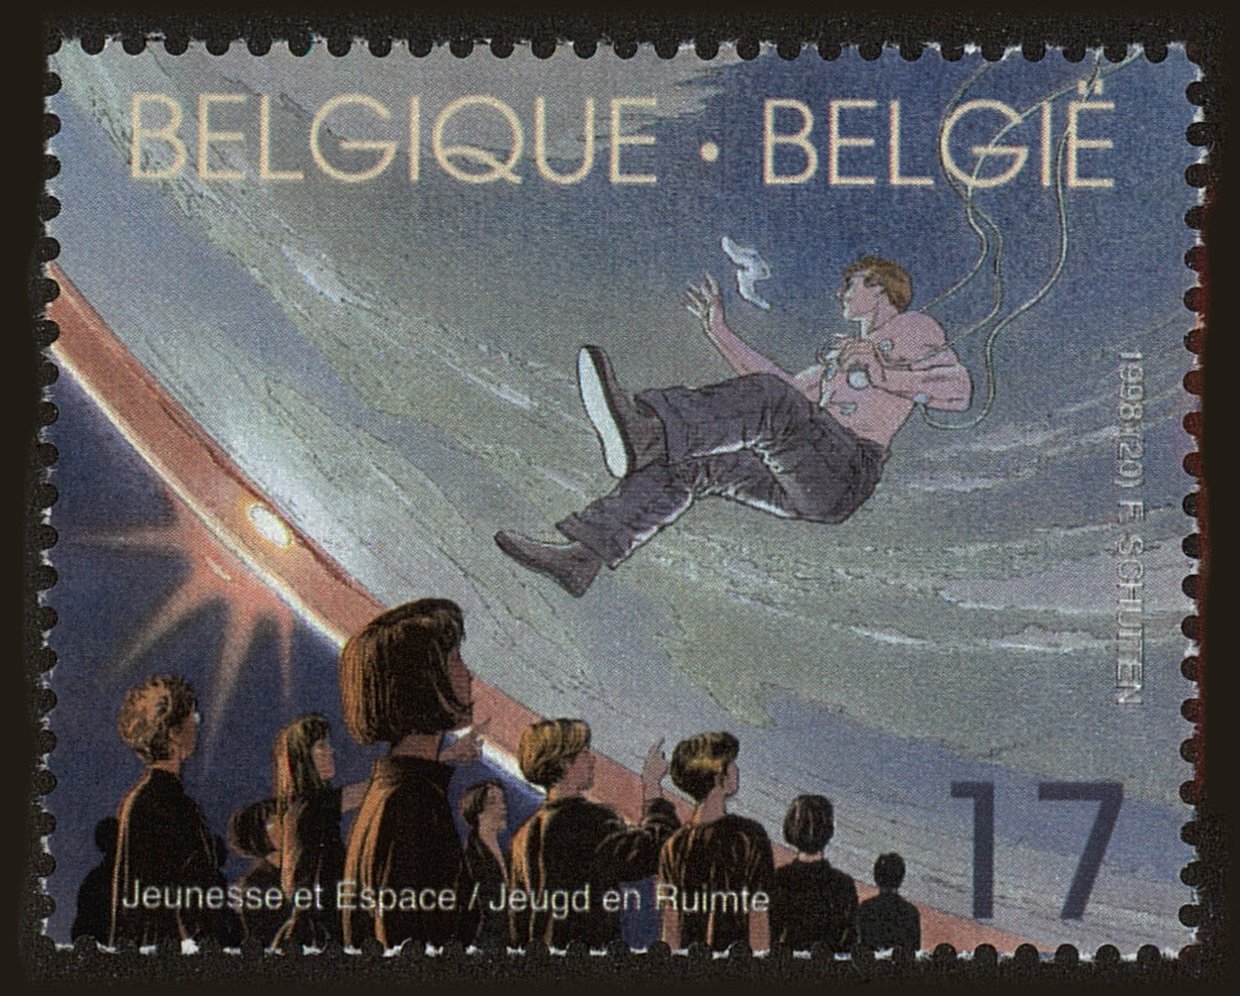 Front view of Belgium 1710 collectors stamp